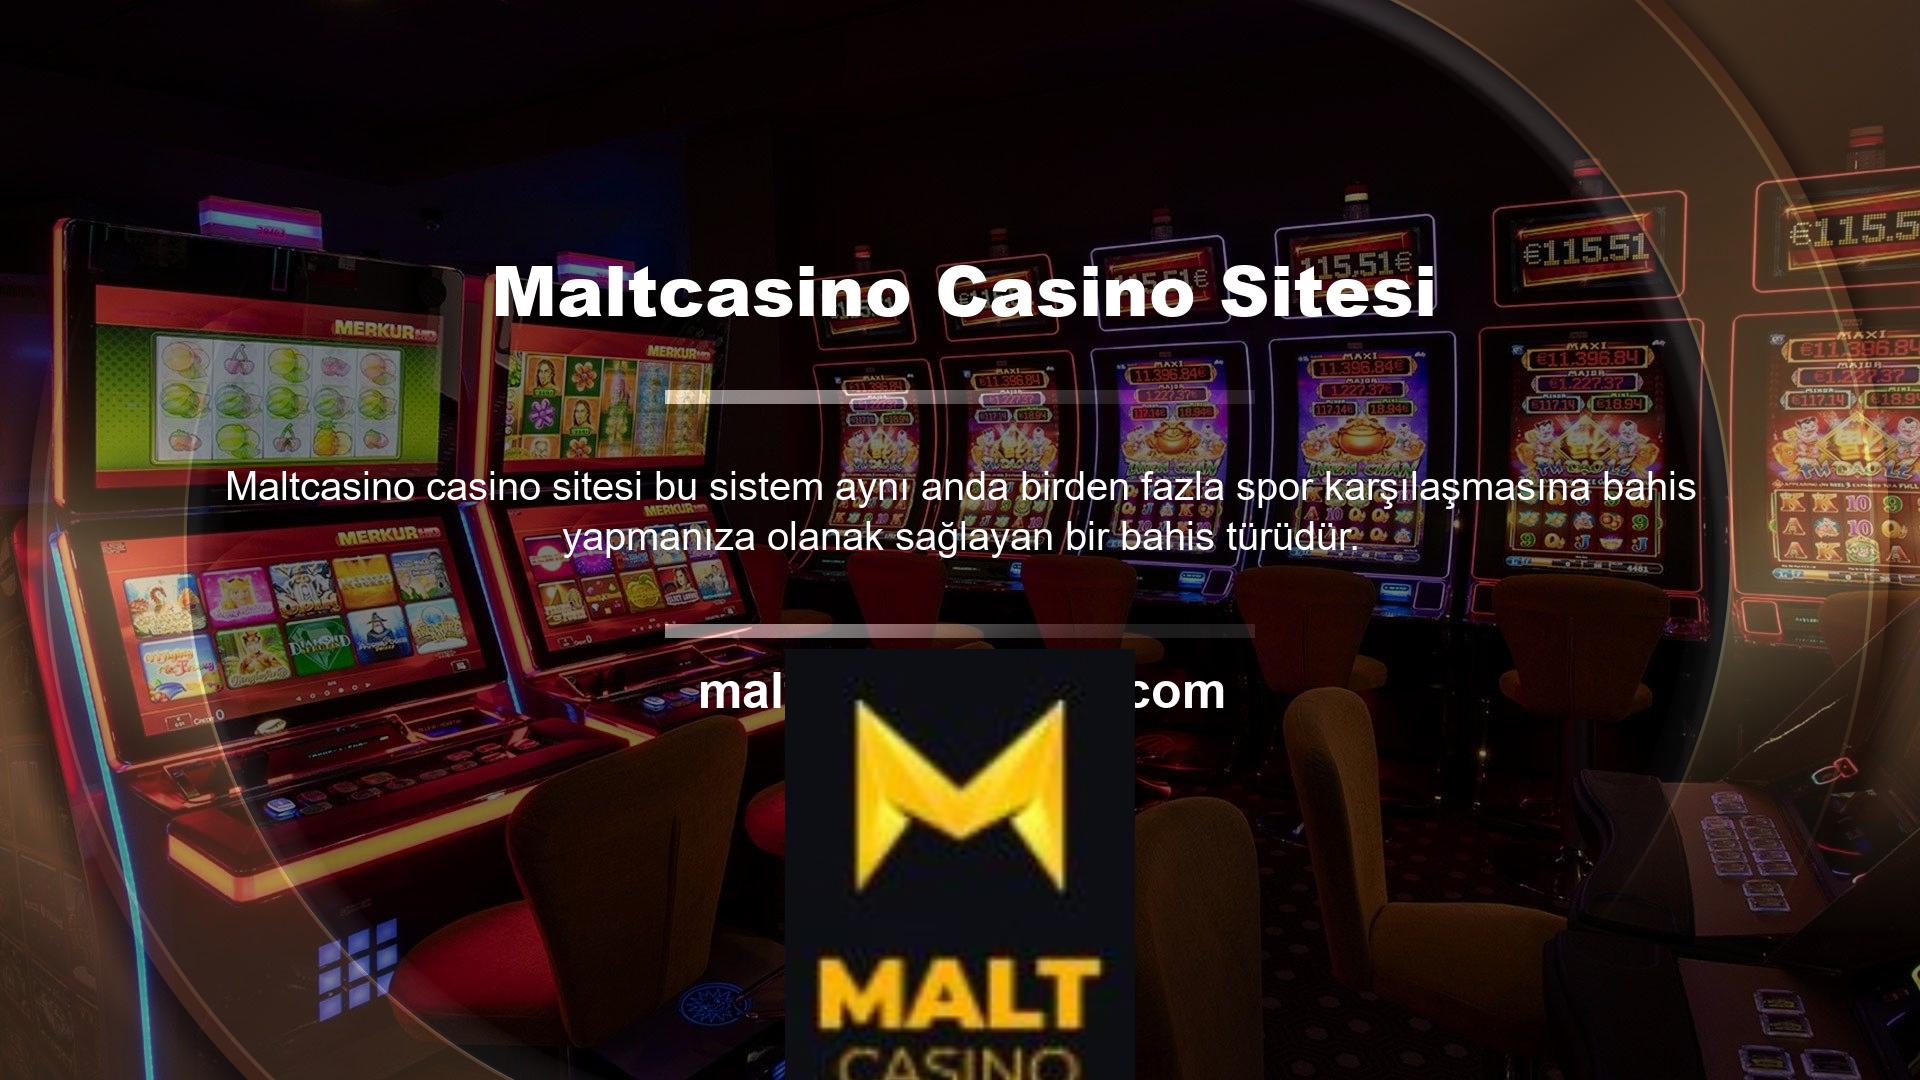 Maltcasino, casino olarak ikiye katlanan casino sitelerinden biridir